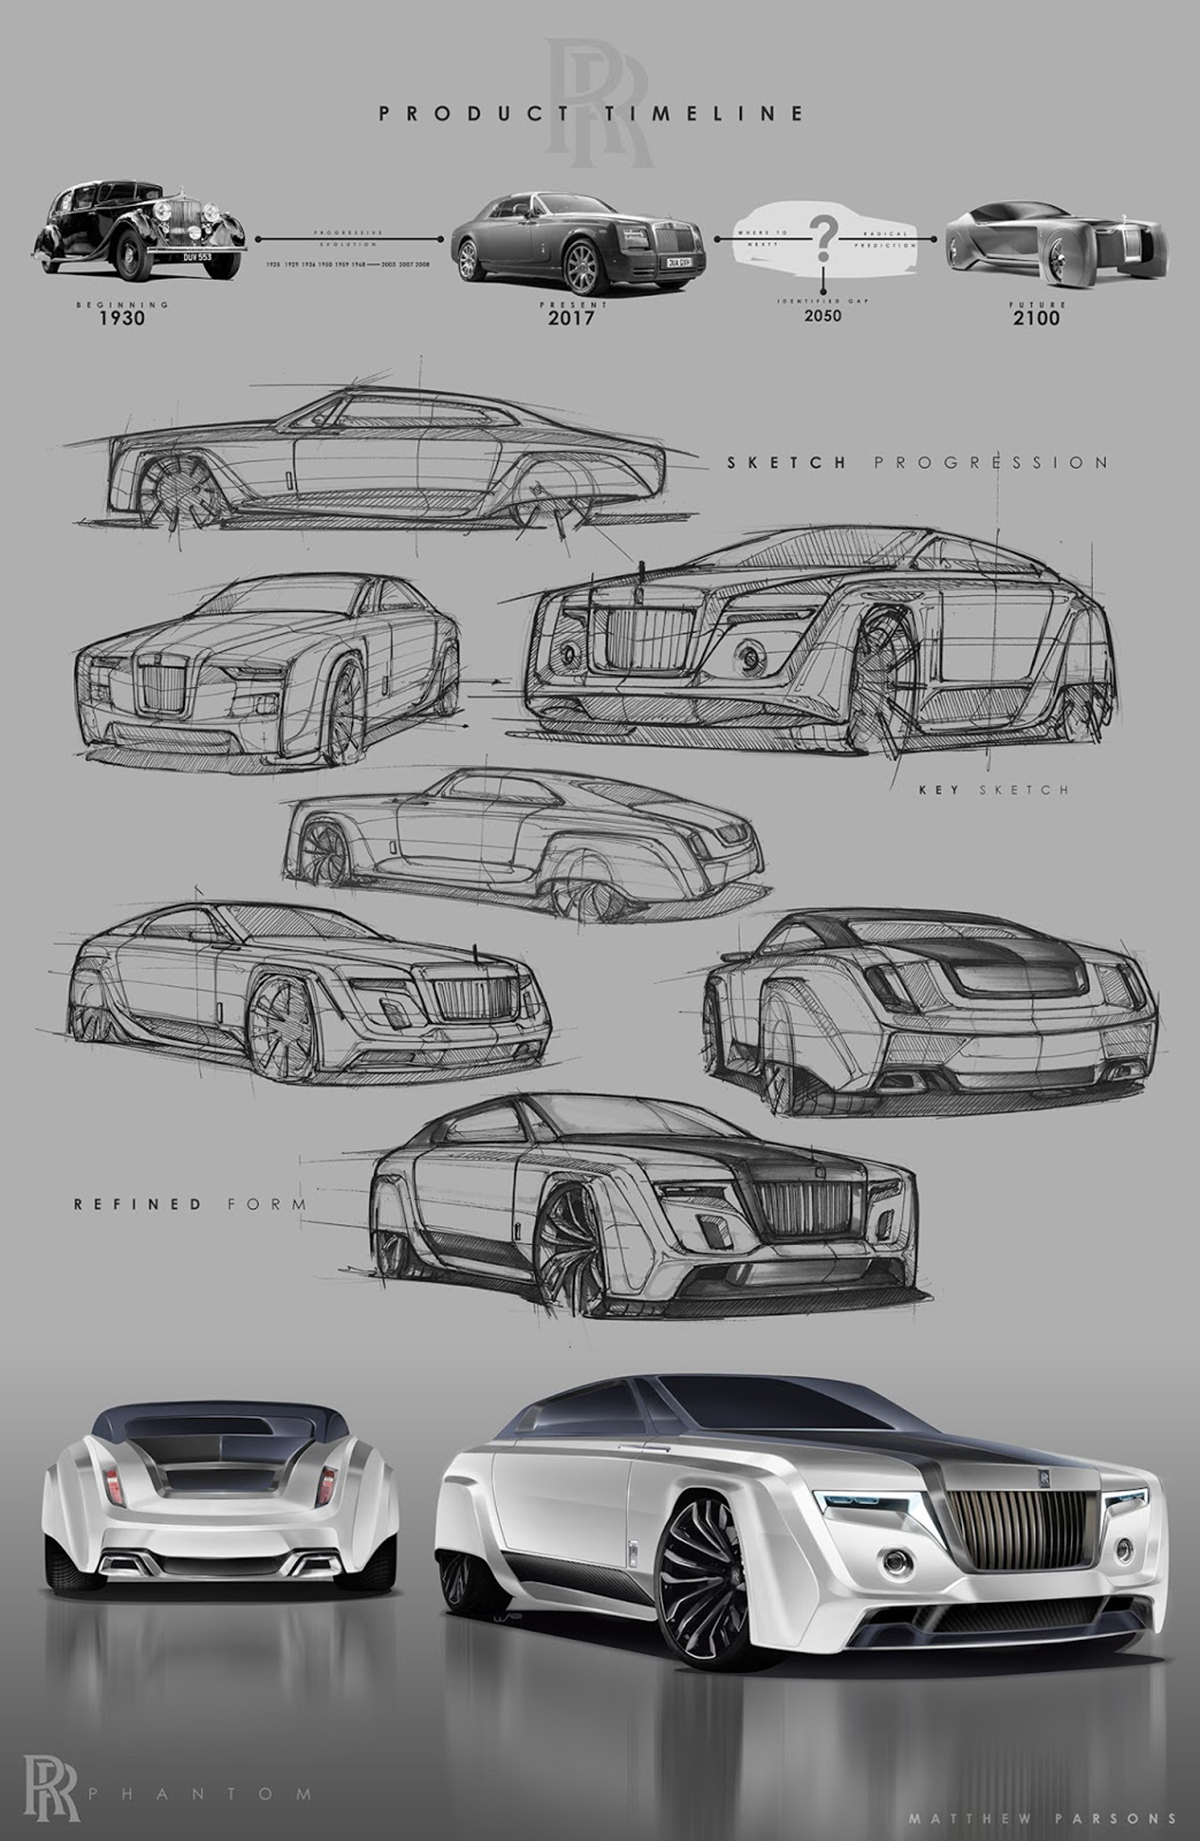 Rolls-Royce Phantom phiên bản 2050 trông “vi diệu” như thế nào?